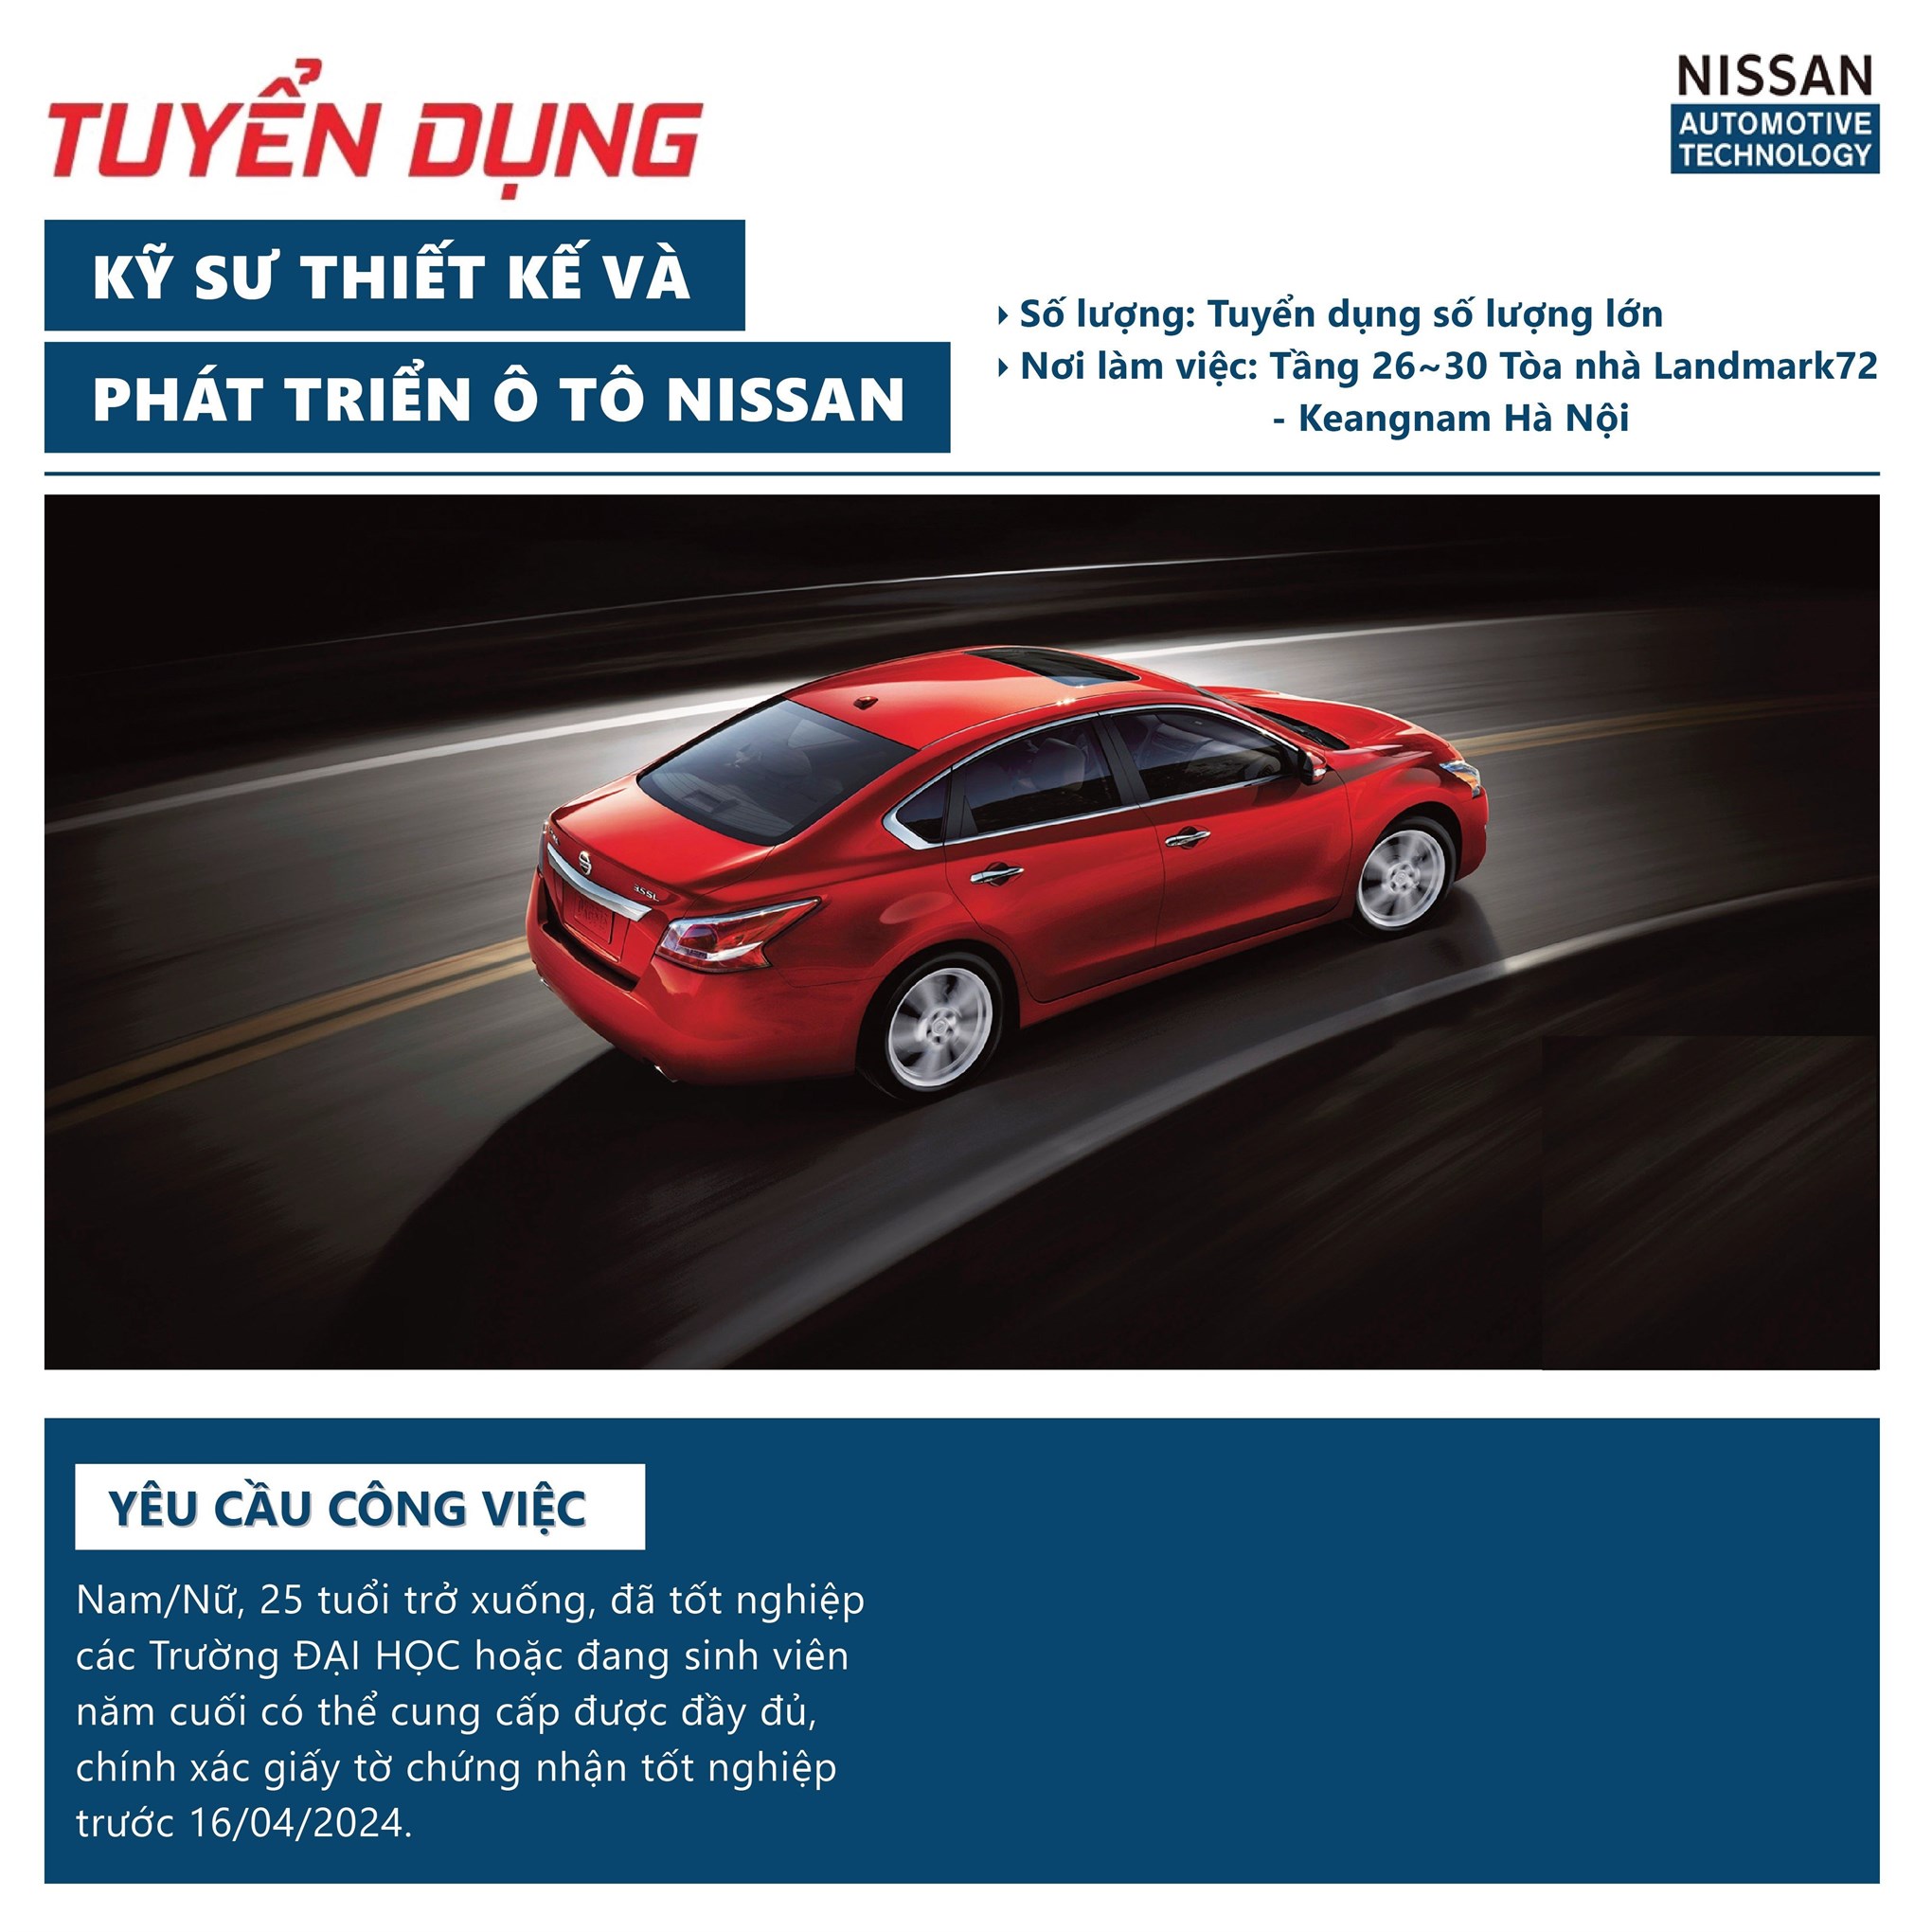 Chương trình thi tuyển trực tiếp tại trường của Công ty TNHH Nissan Automotive Technology Việt Nam